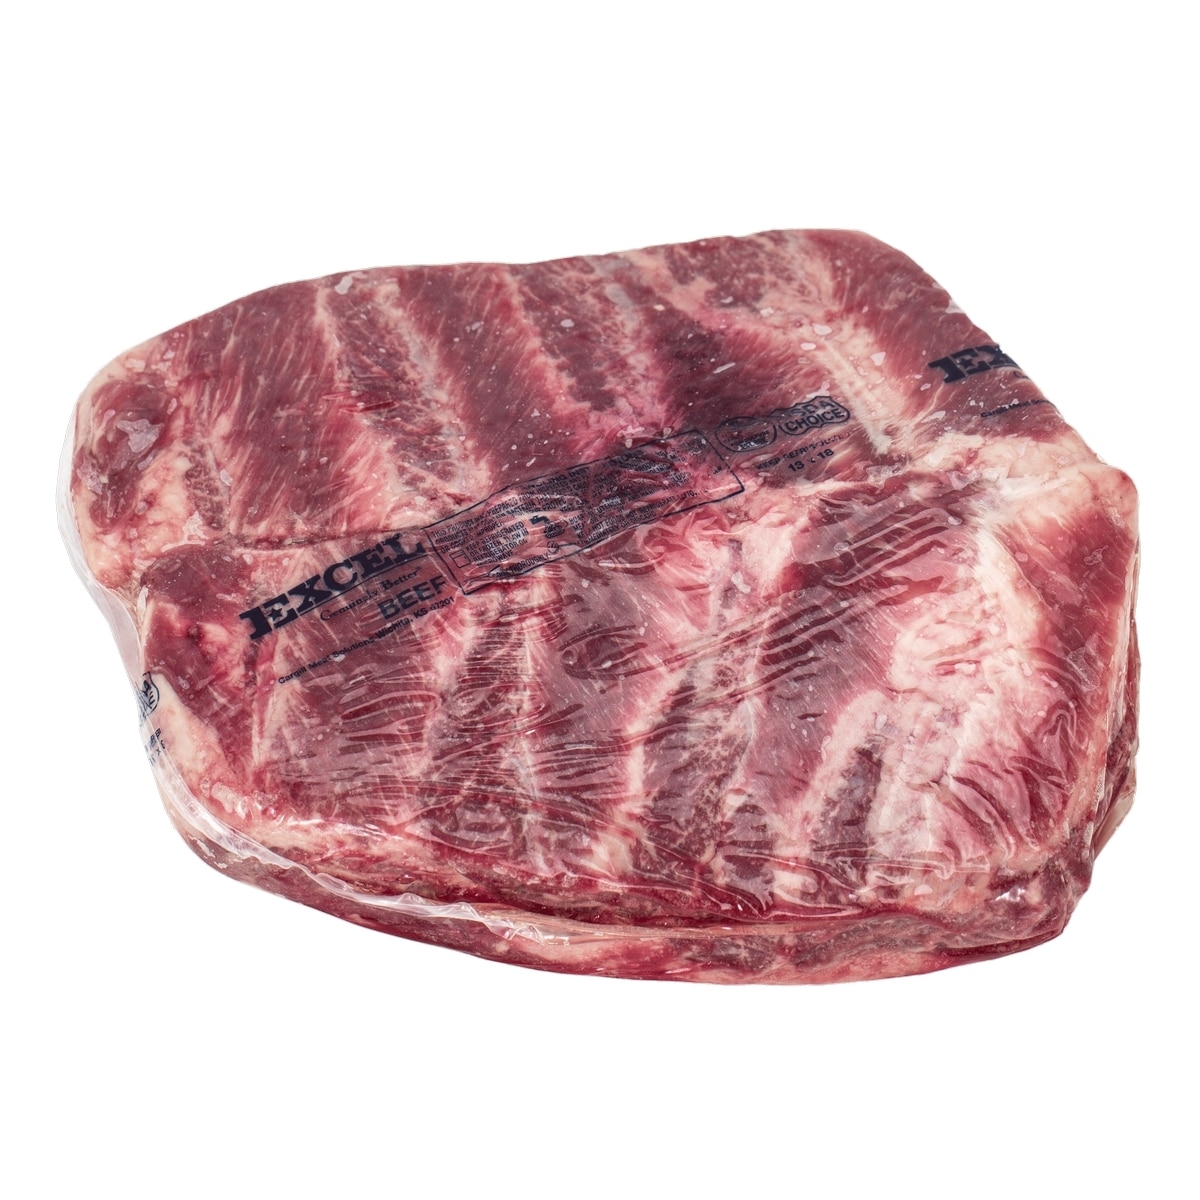 美國特選冷凍翼板肉 20公斤 / 箱